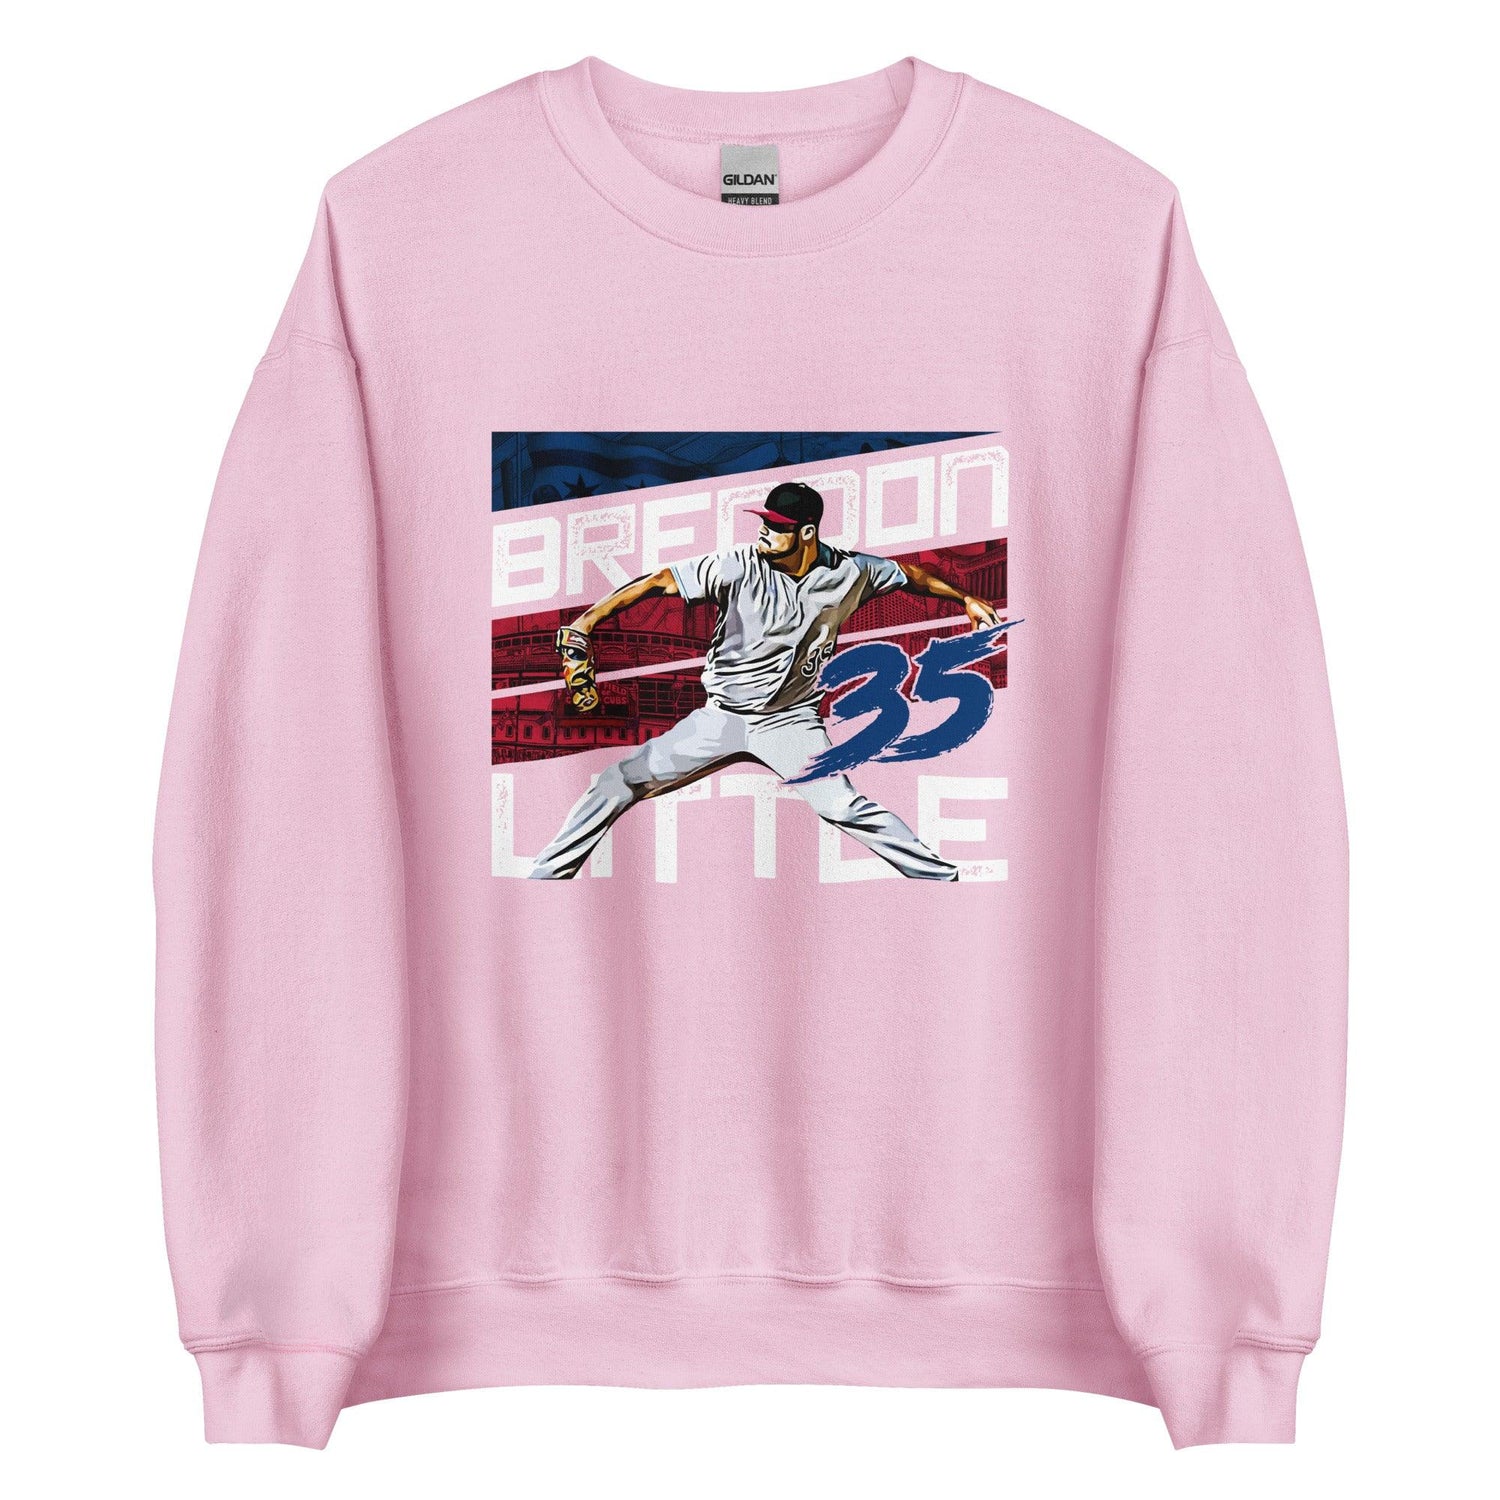 Brendon Little "35" Sweatshirt - Fan Arch